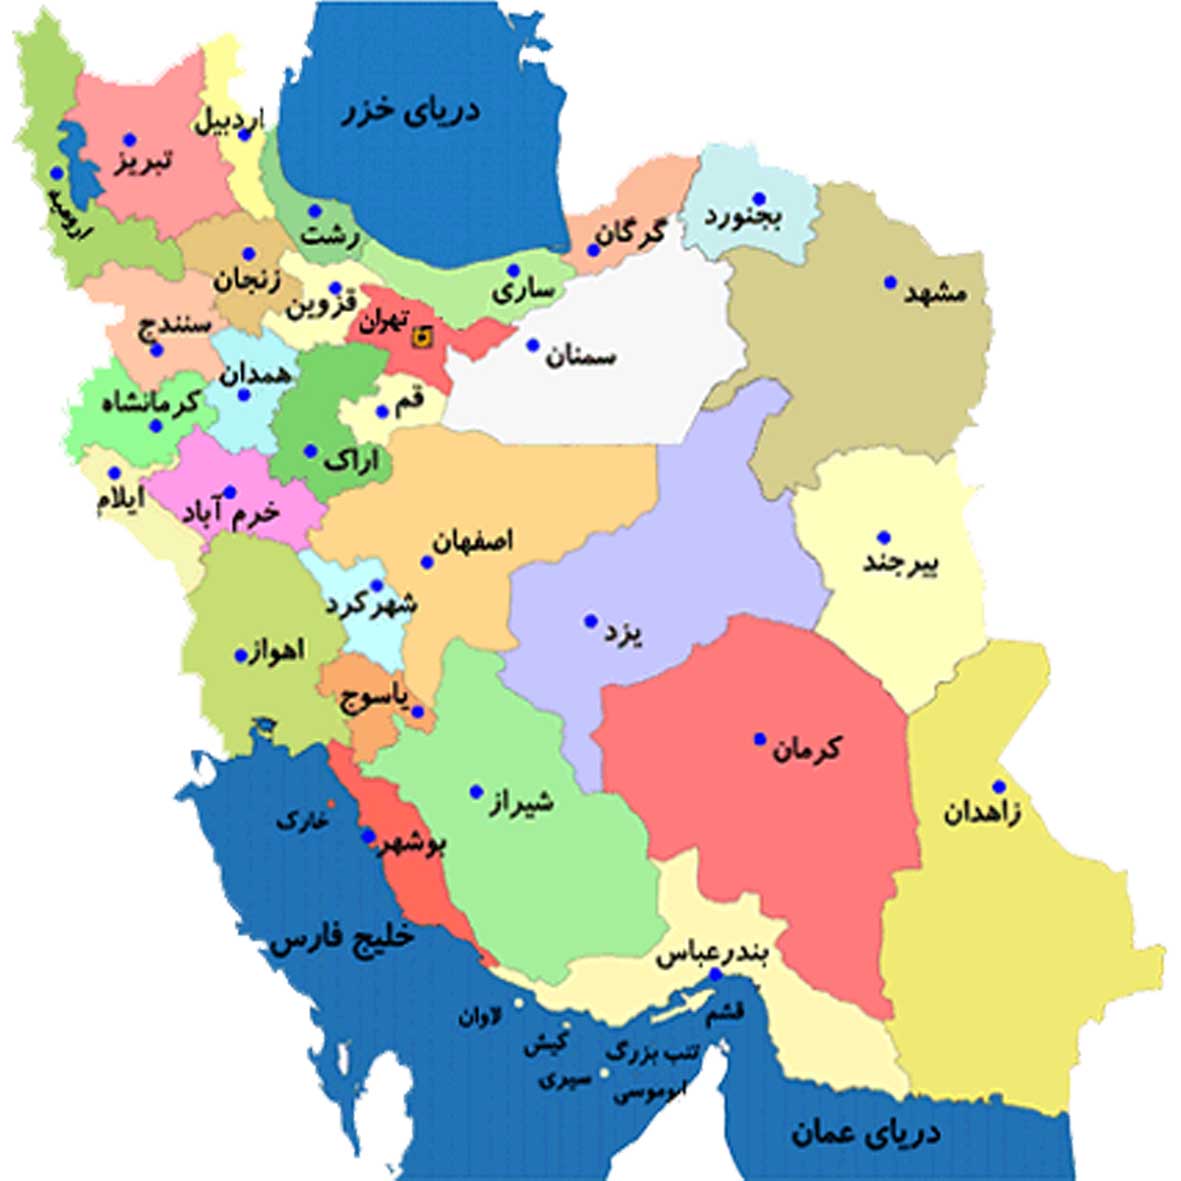 عکس نقشه ایران کامل